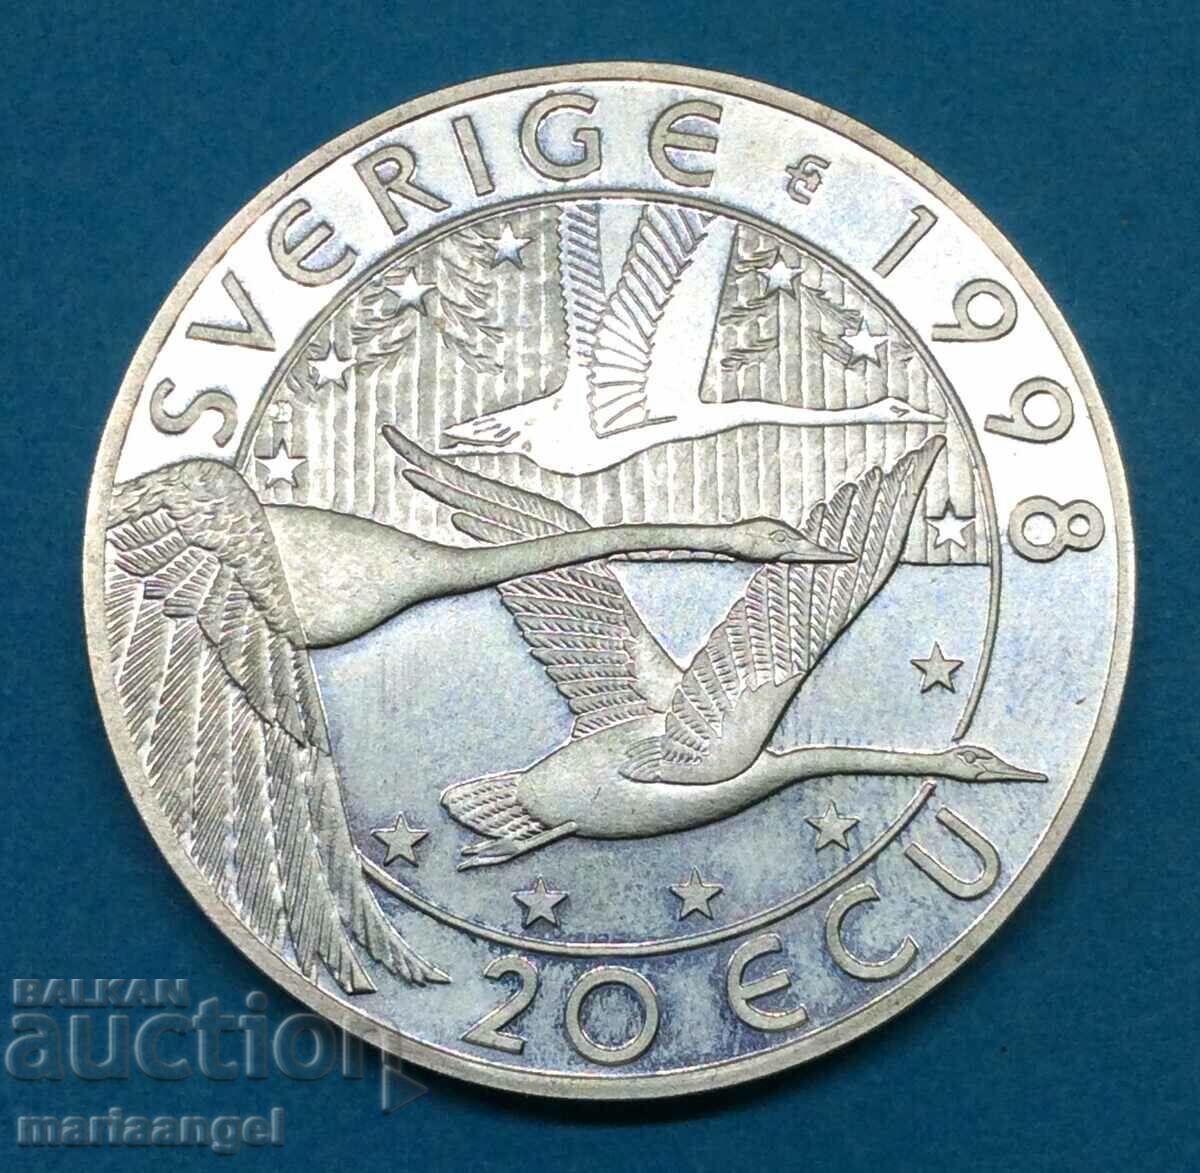 20 екю 1998 Швеция Адолф Густав II 26,93г сребро PROOF